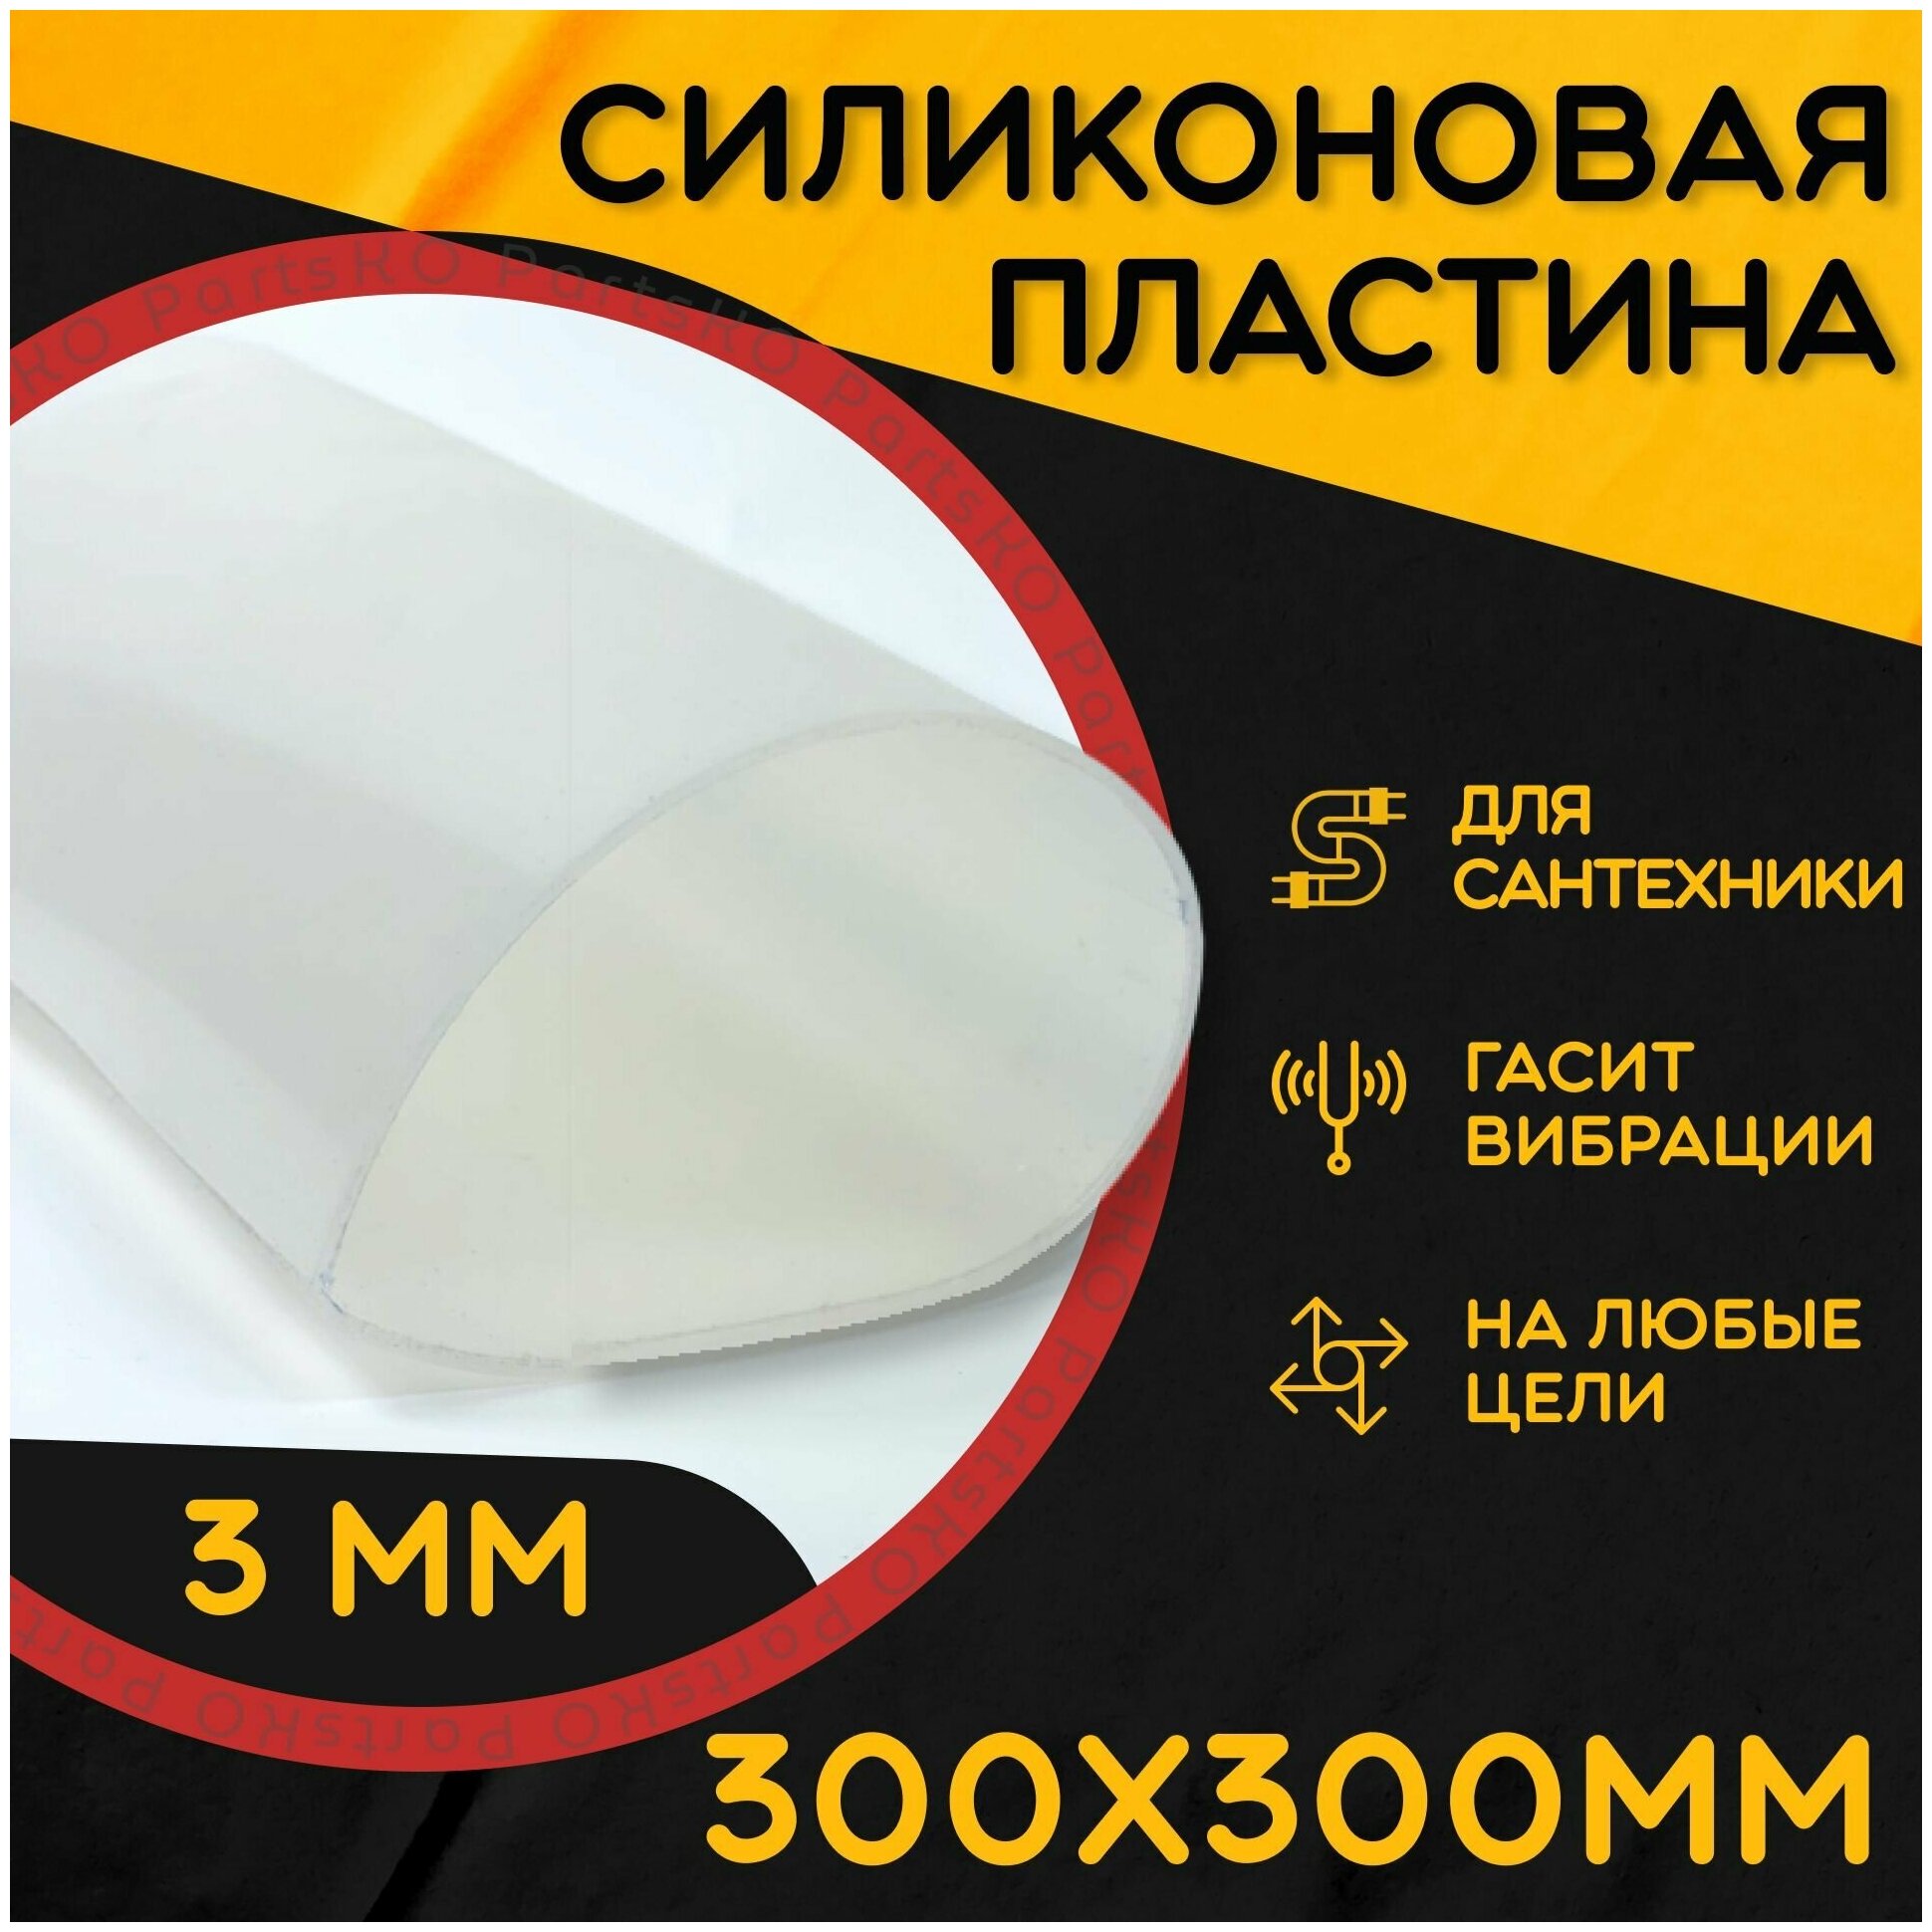 Силиконовая резина термостойкая. Толщина 3 мм. Размер 300х300 мм / Уплотнительная прокладка / Силиконовая пластина белого цвета.